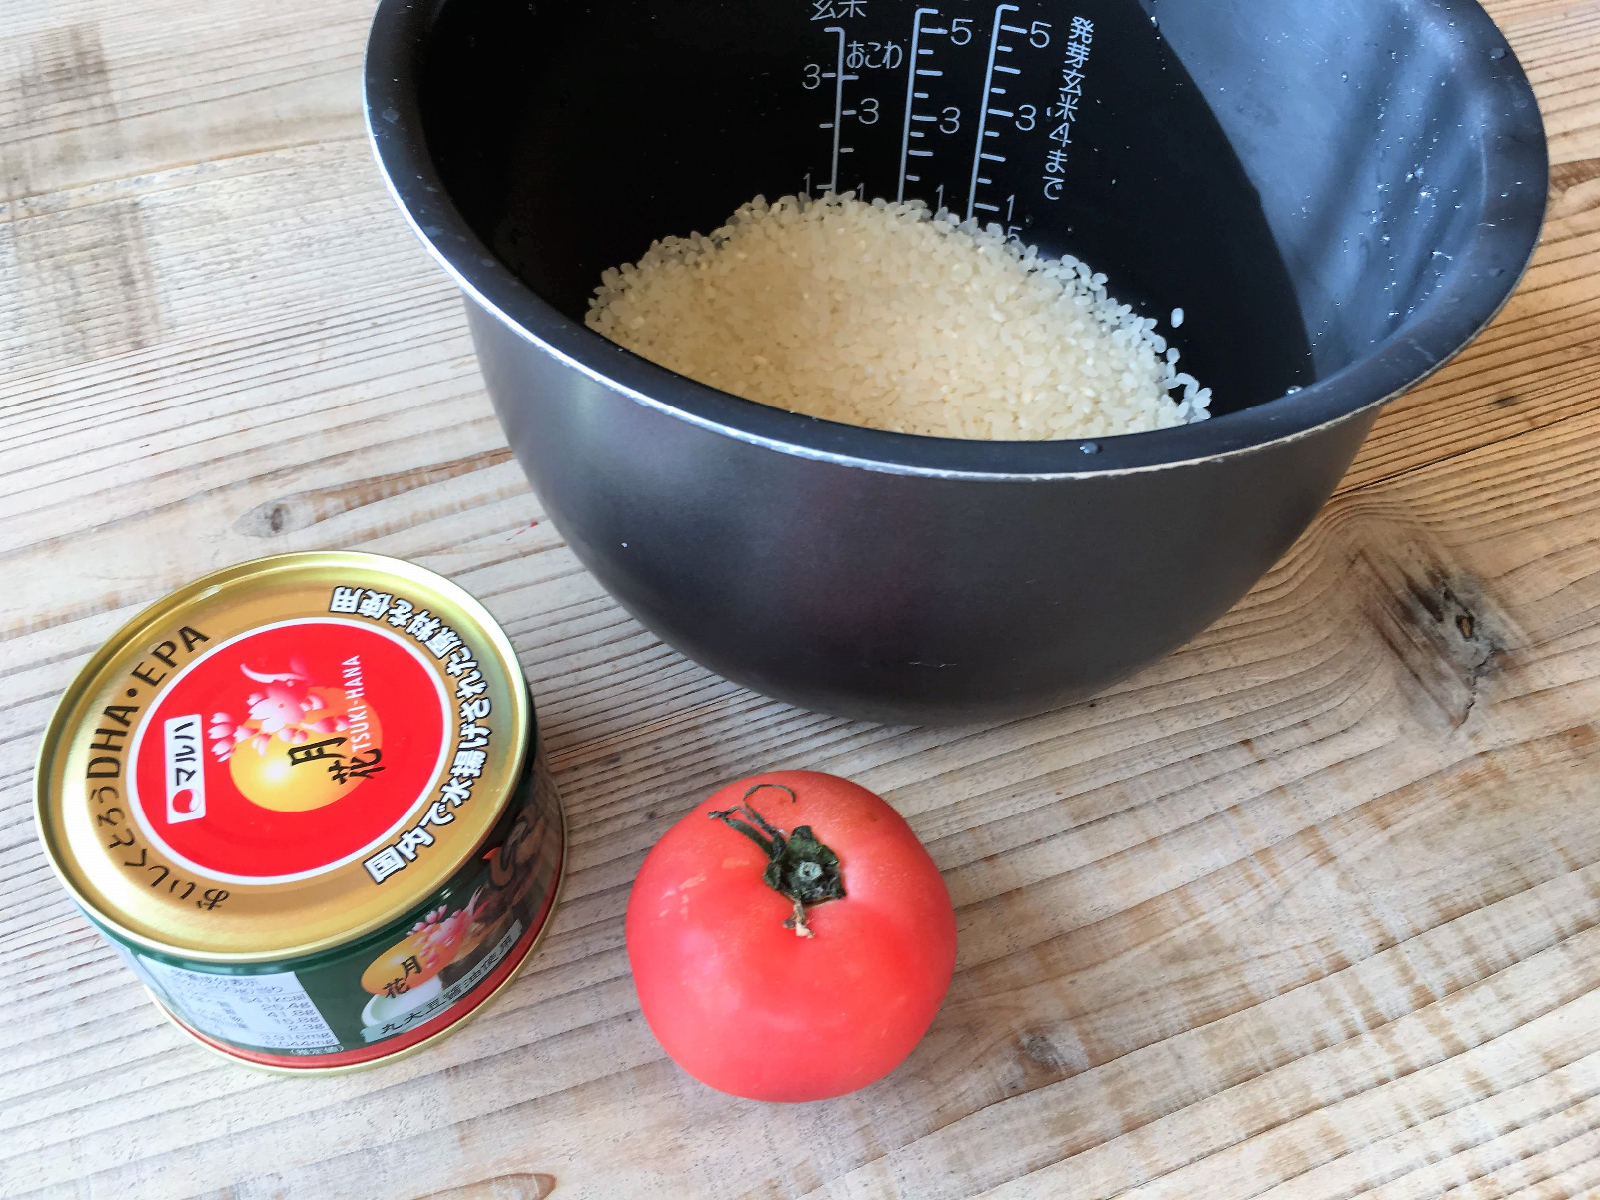 ヒルナンデス レシピ 炊飯器でほったらかしな いわしとトマトの炊き込みご飯 を作ってみた 超激ウマ